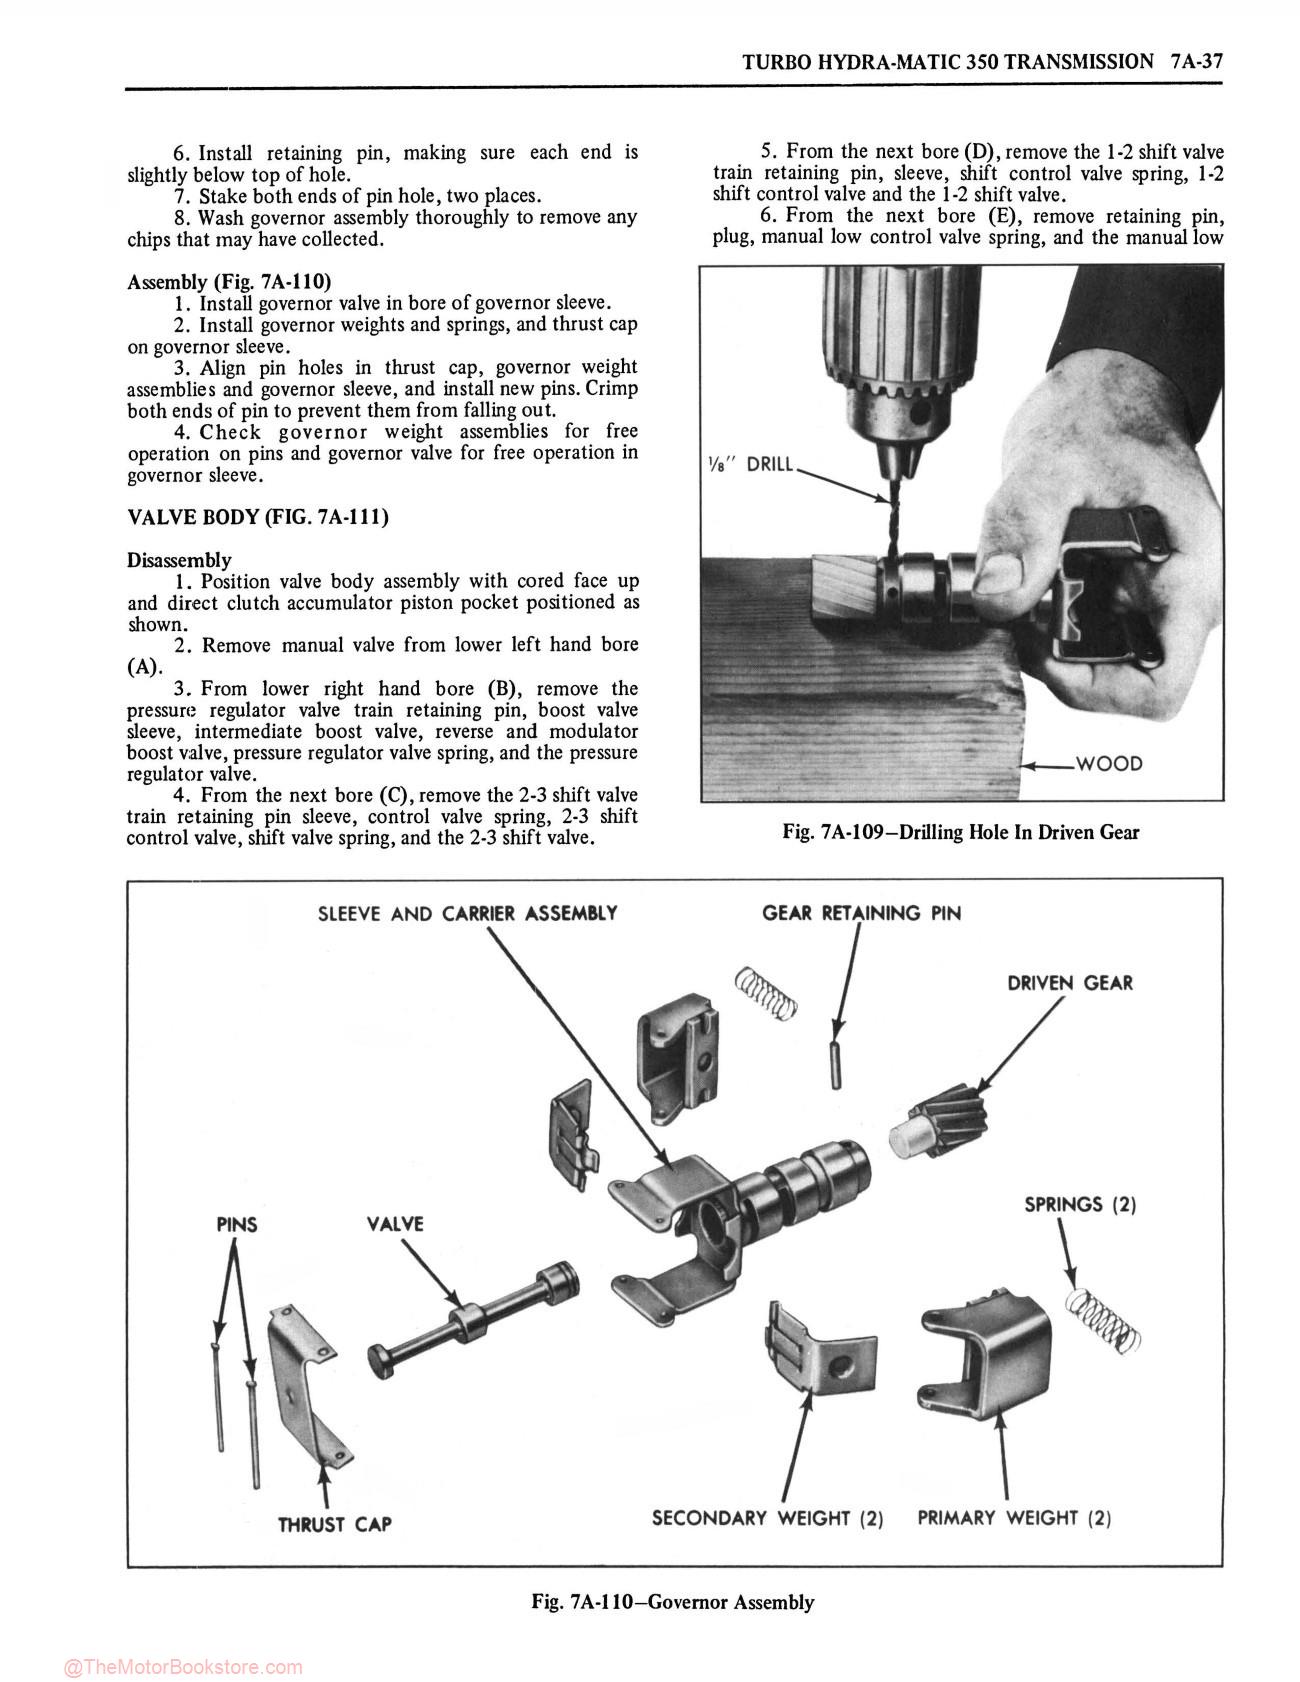 1975 Oldsmobile Service Repair Manual - Sample Page 2